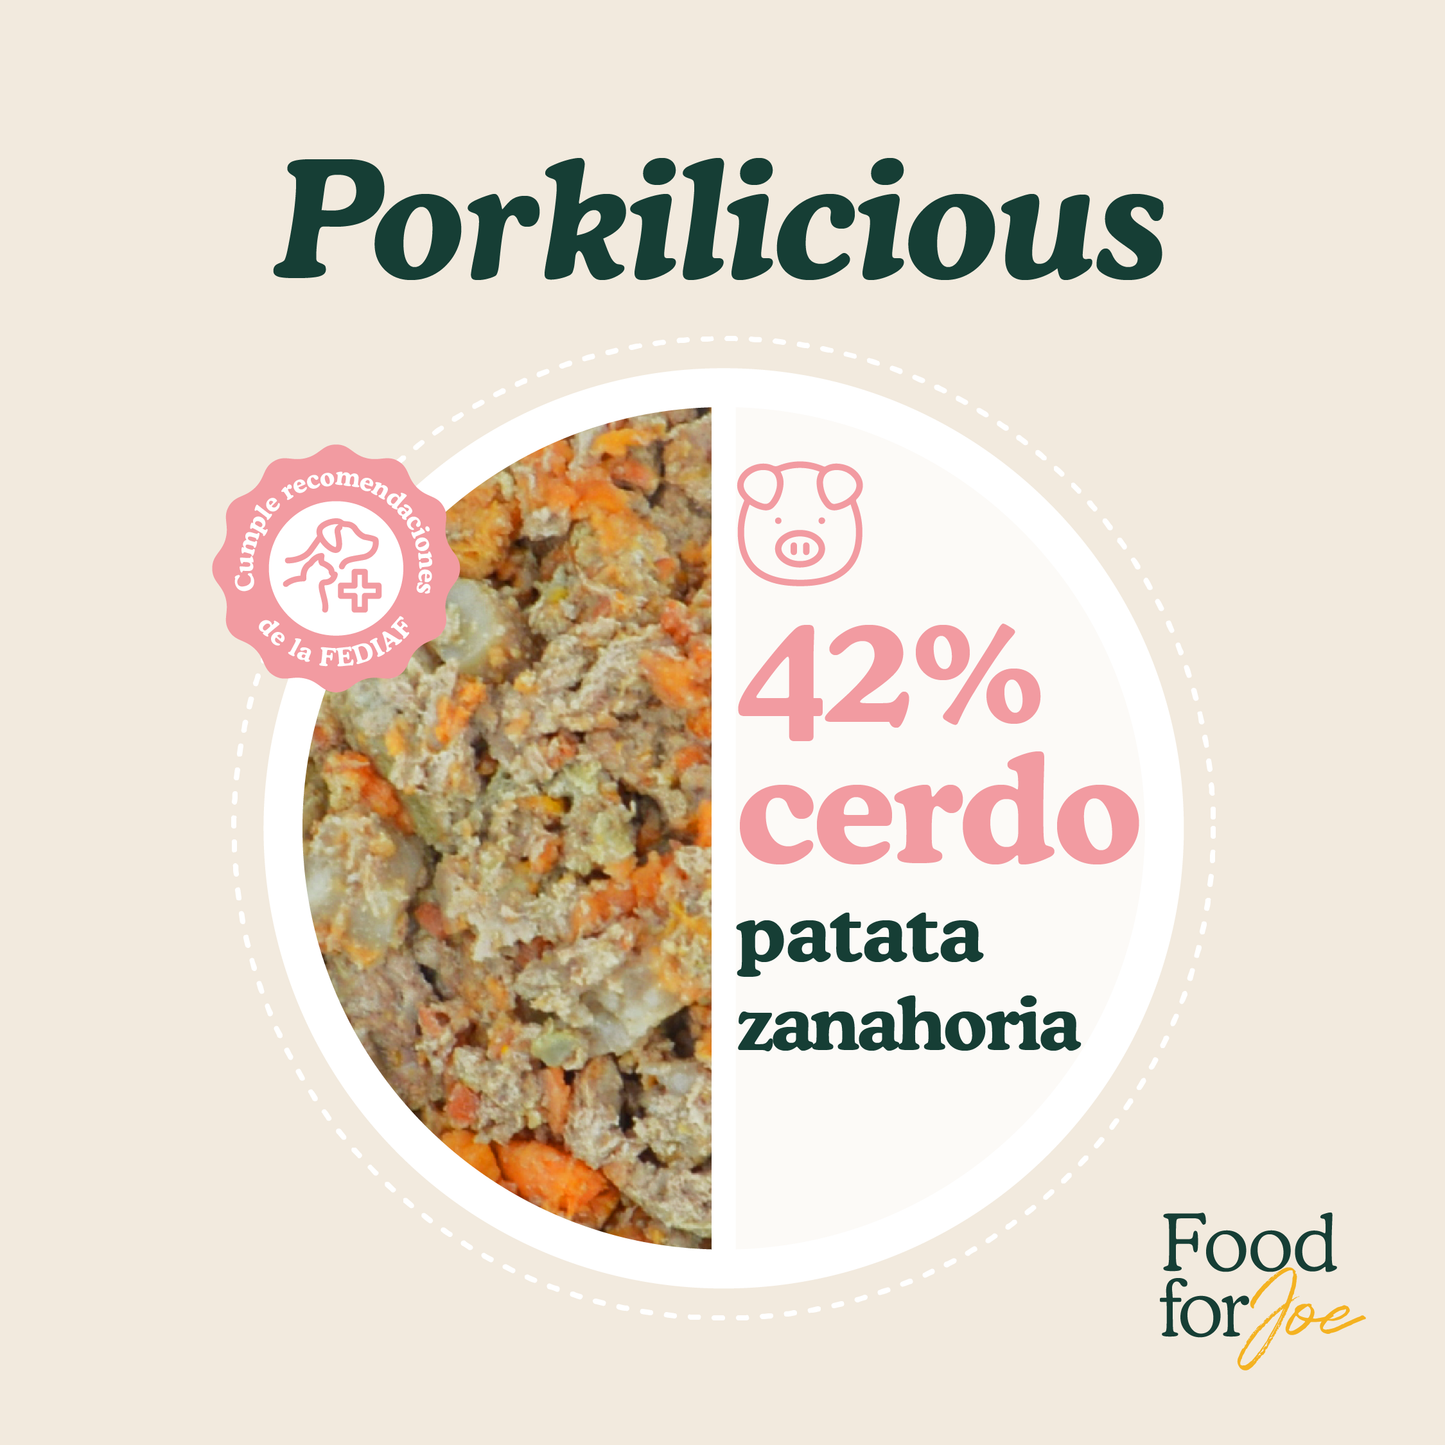 Porkilicious - menú de cerdo para perros 300g